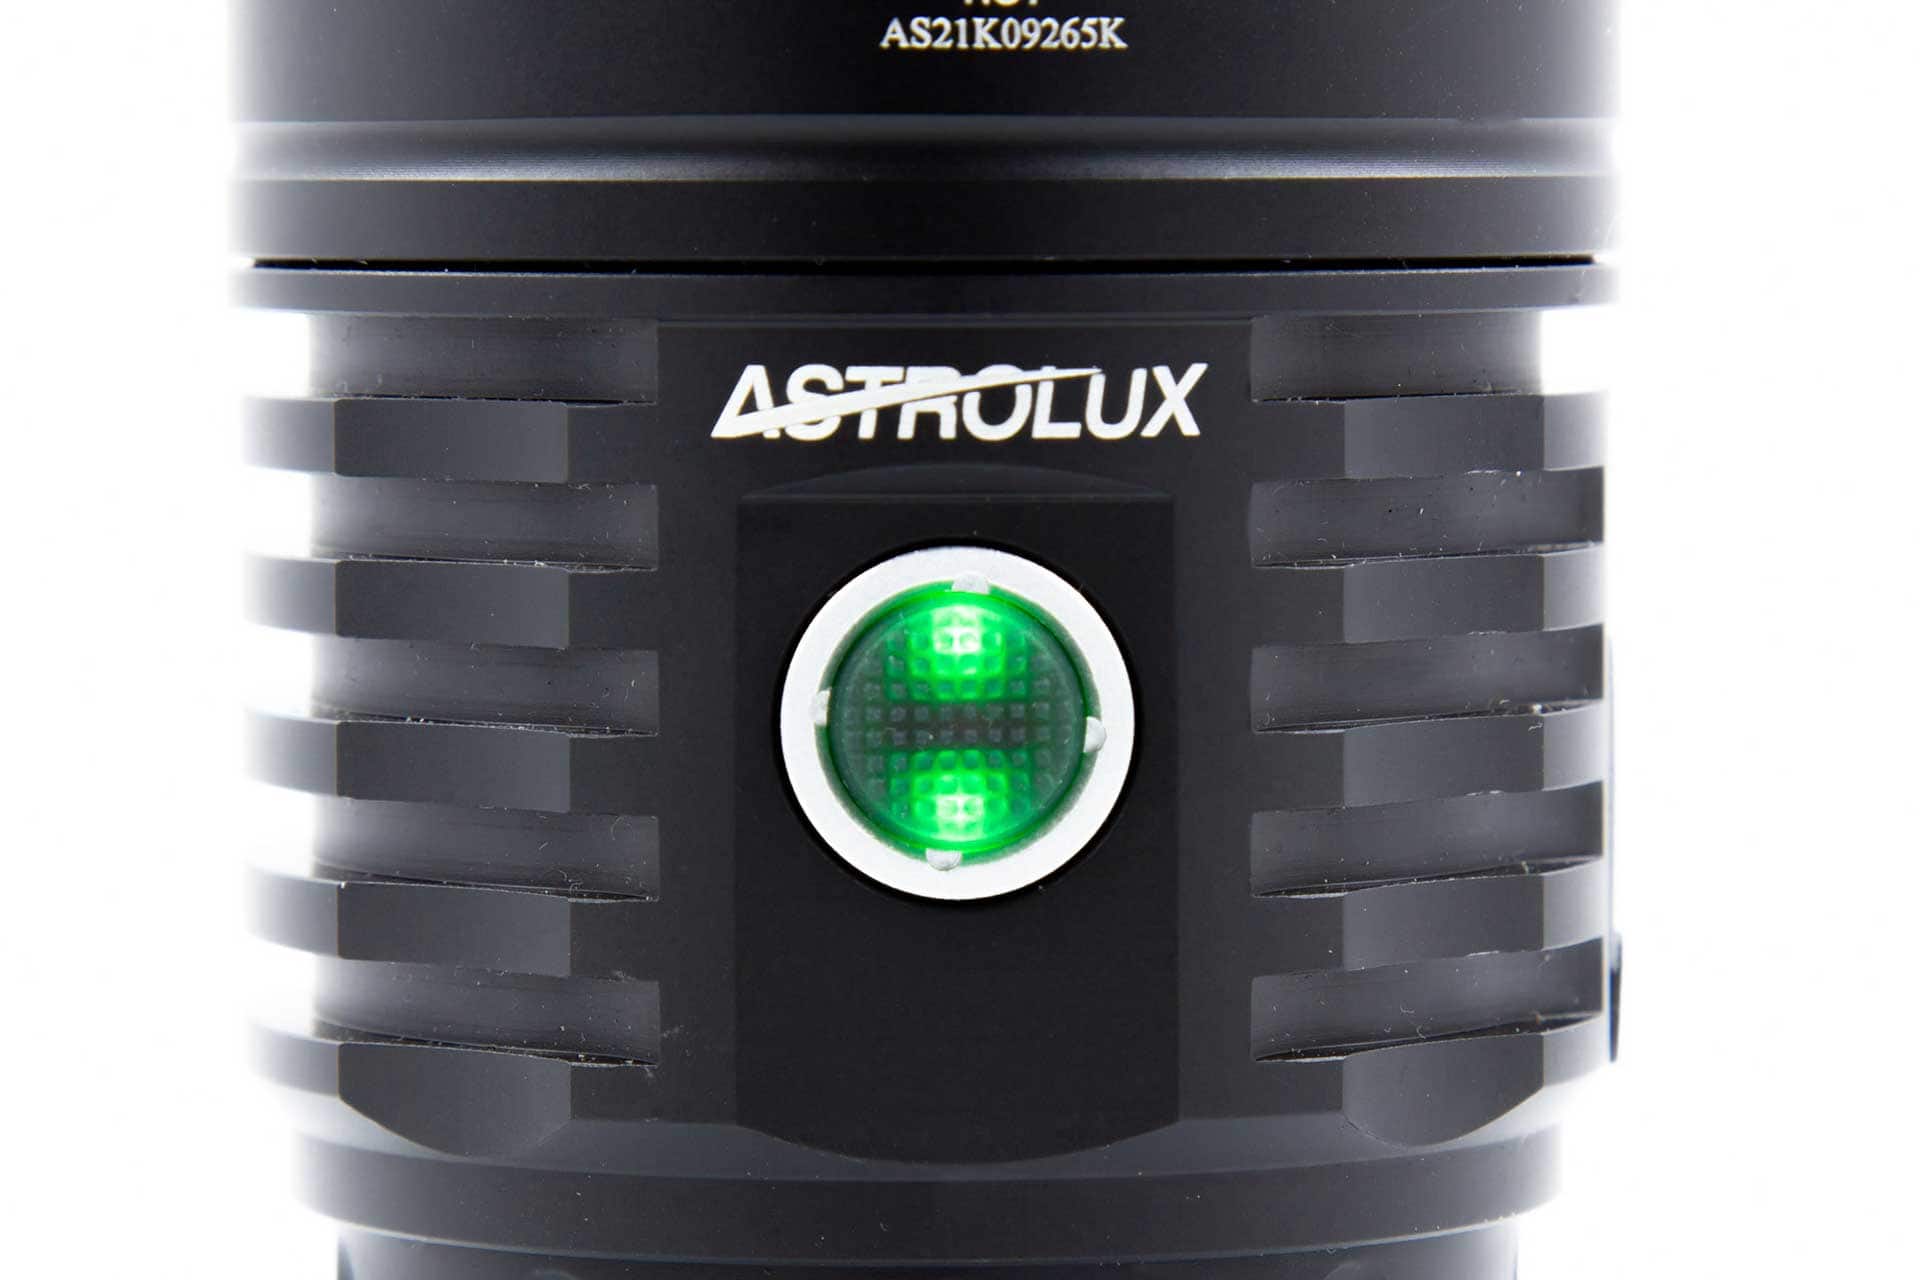 Astrolux EC06 switch